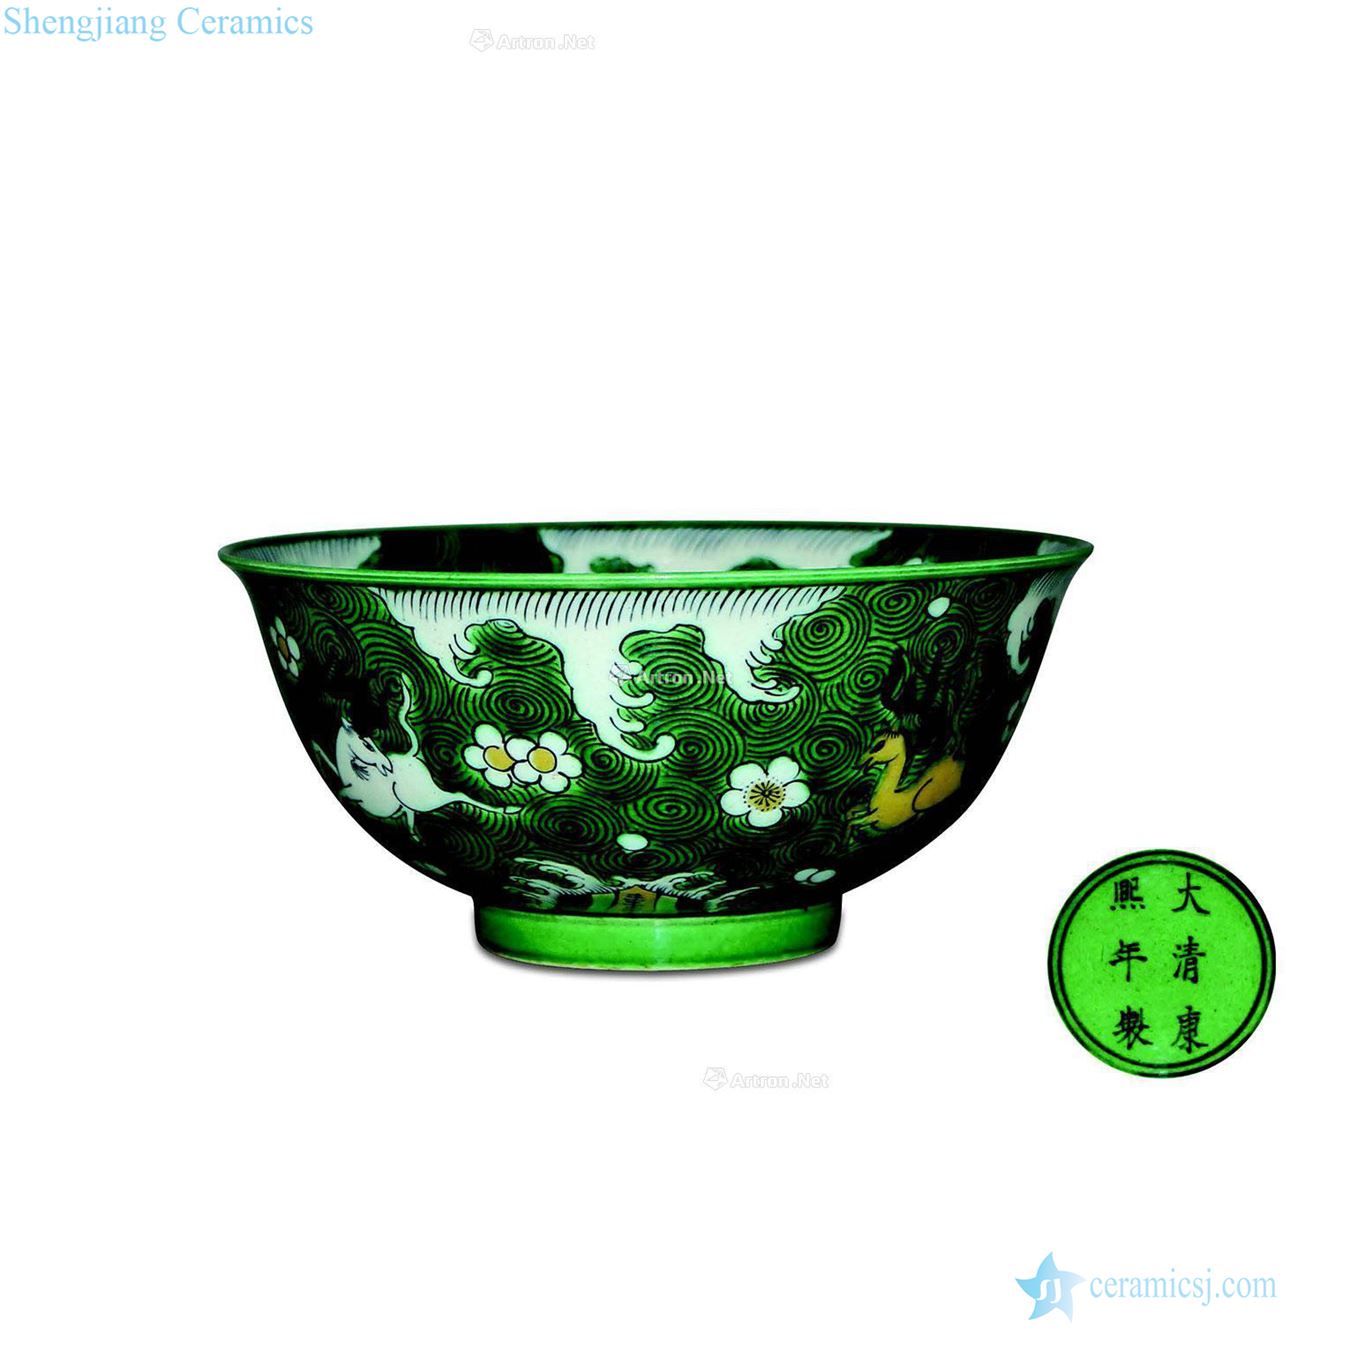 Colorful seazan benevolent green-splashed bowls